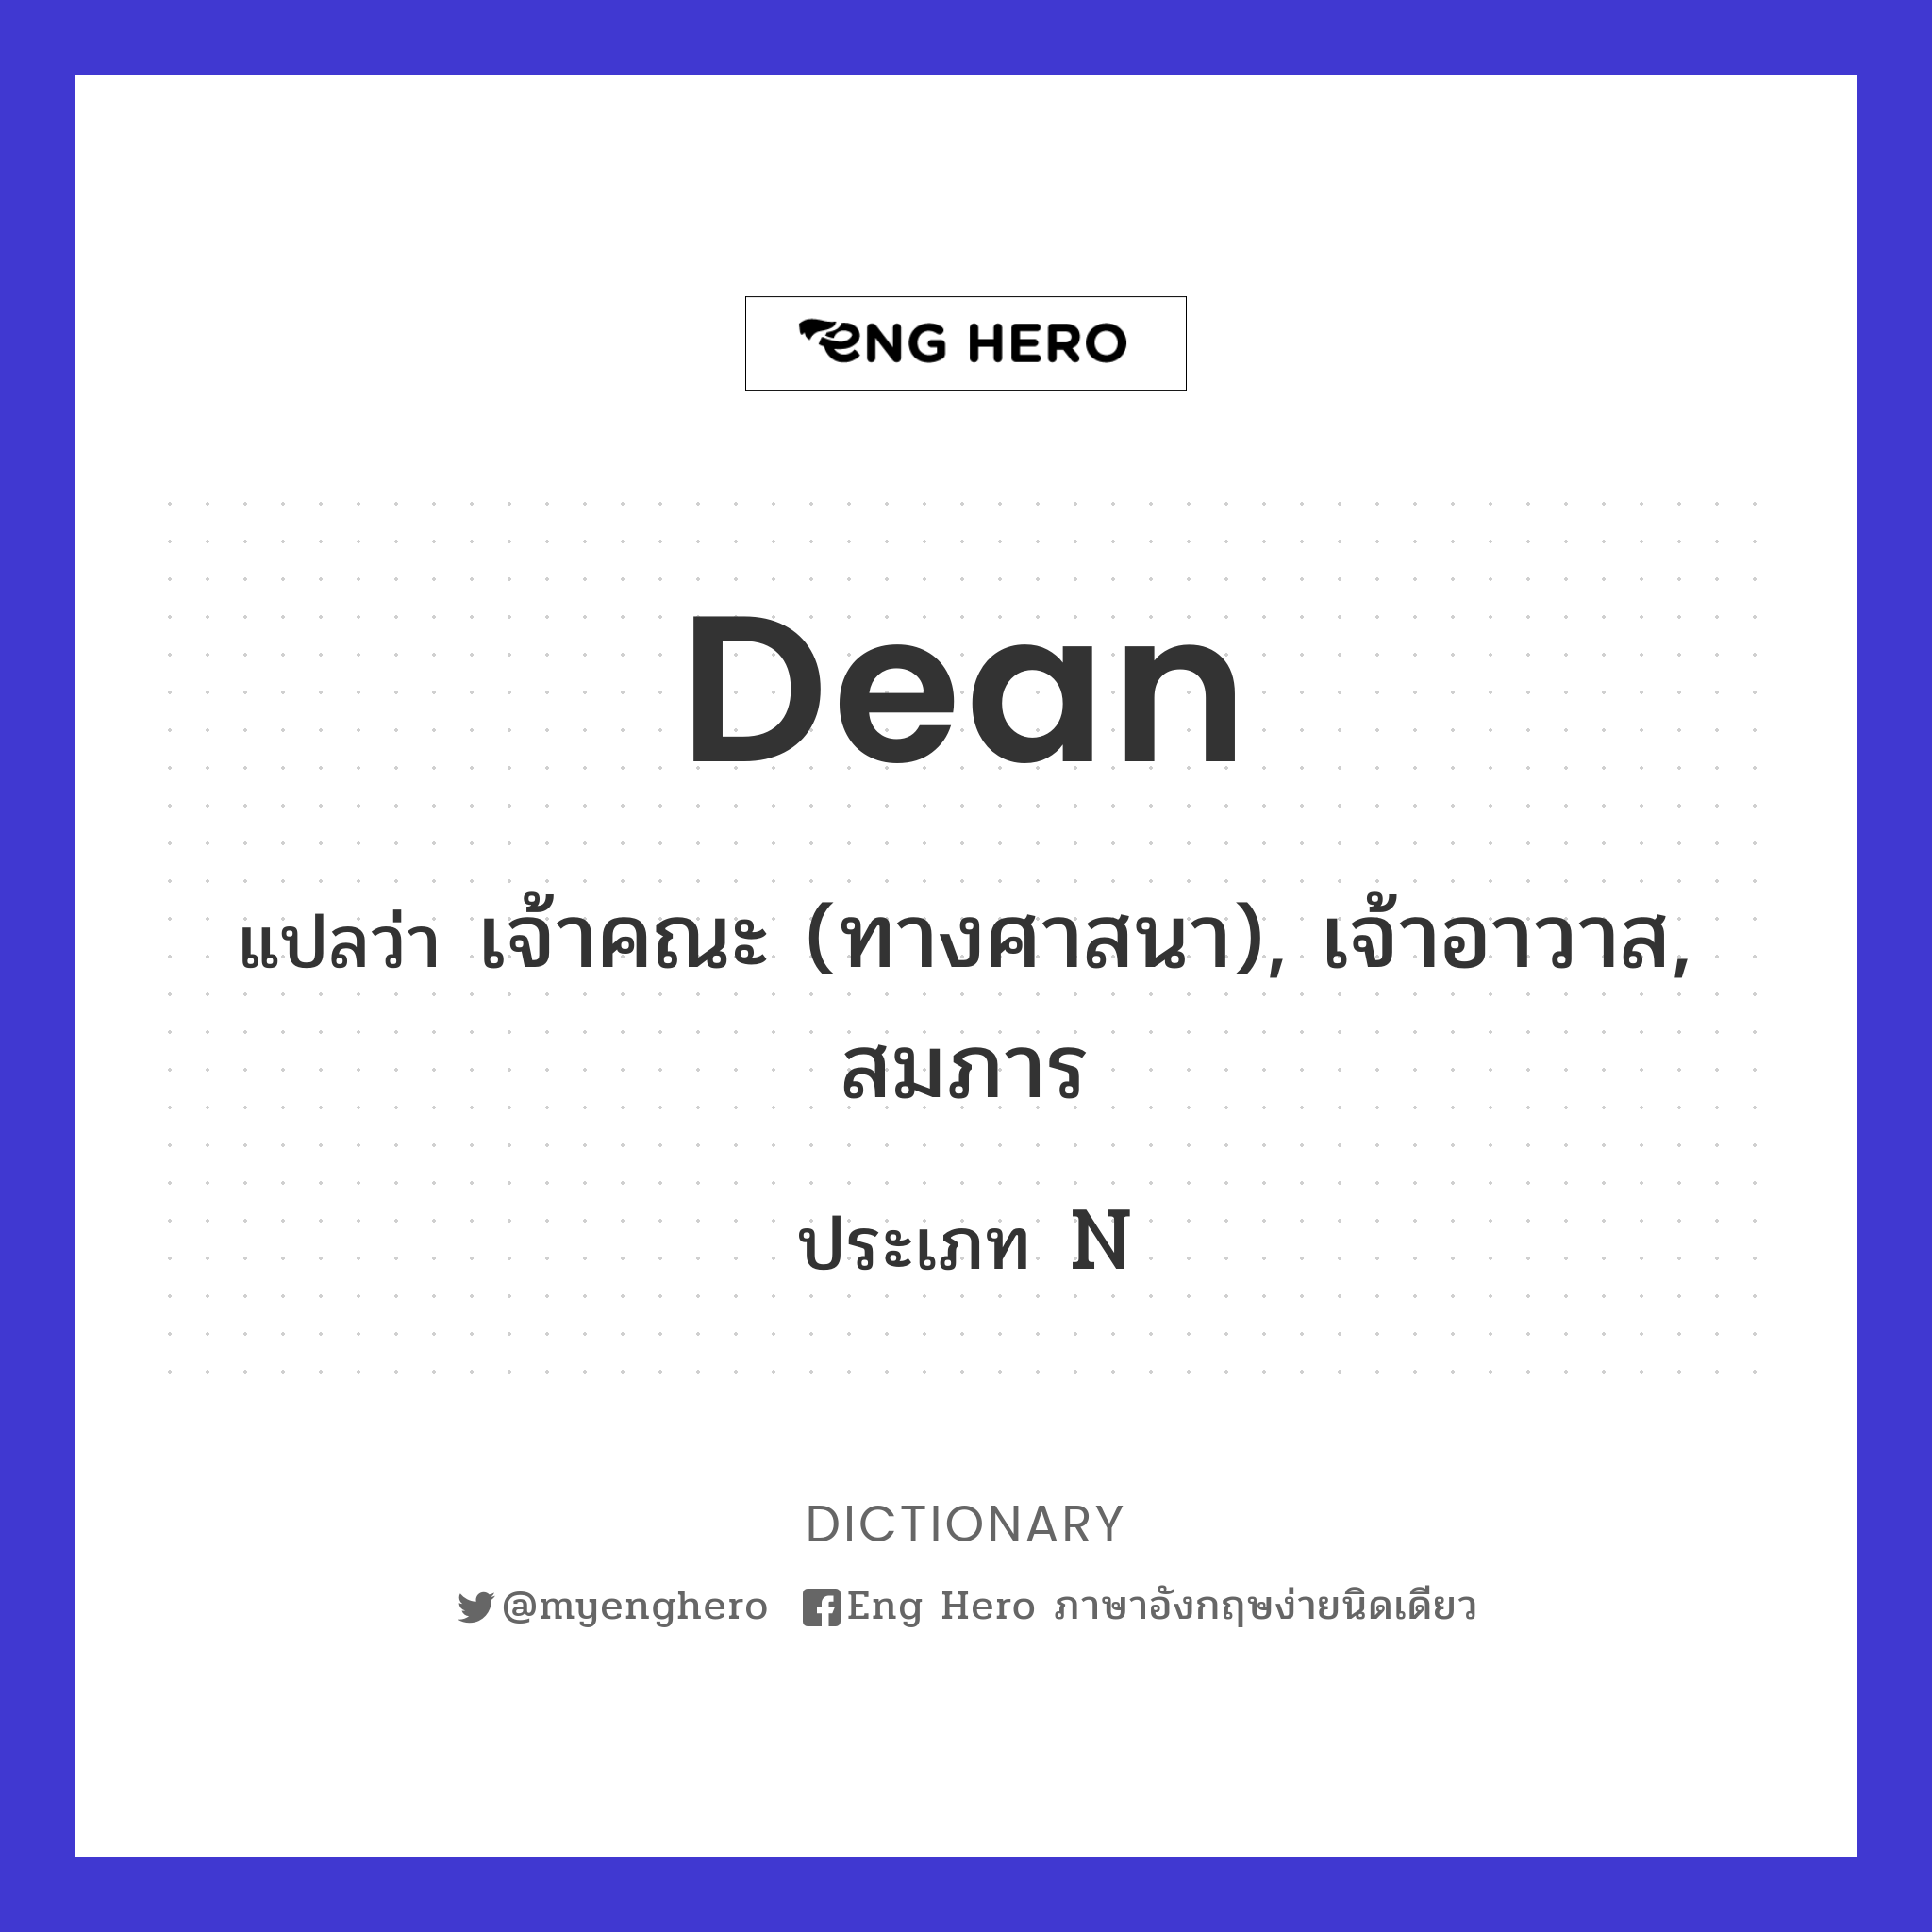 dean